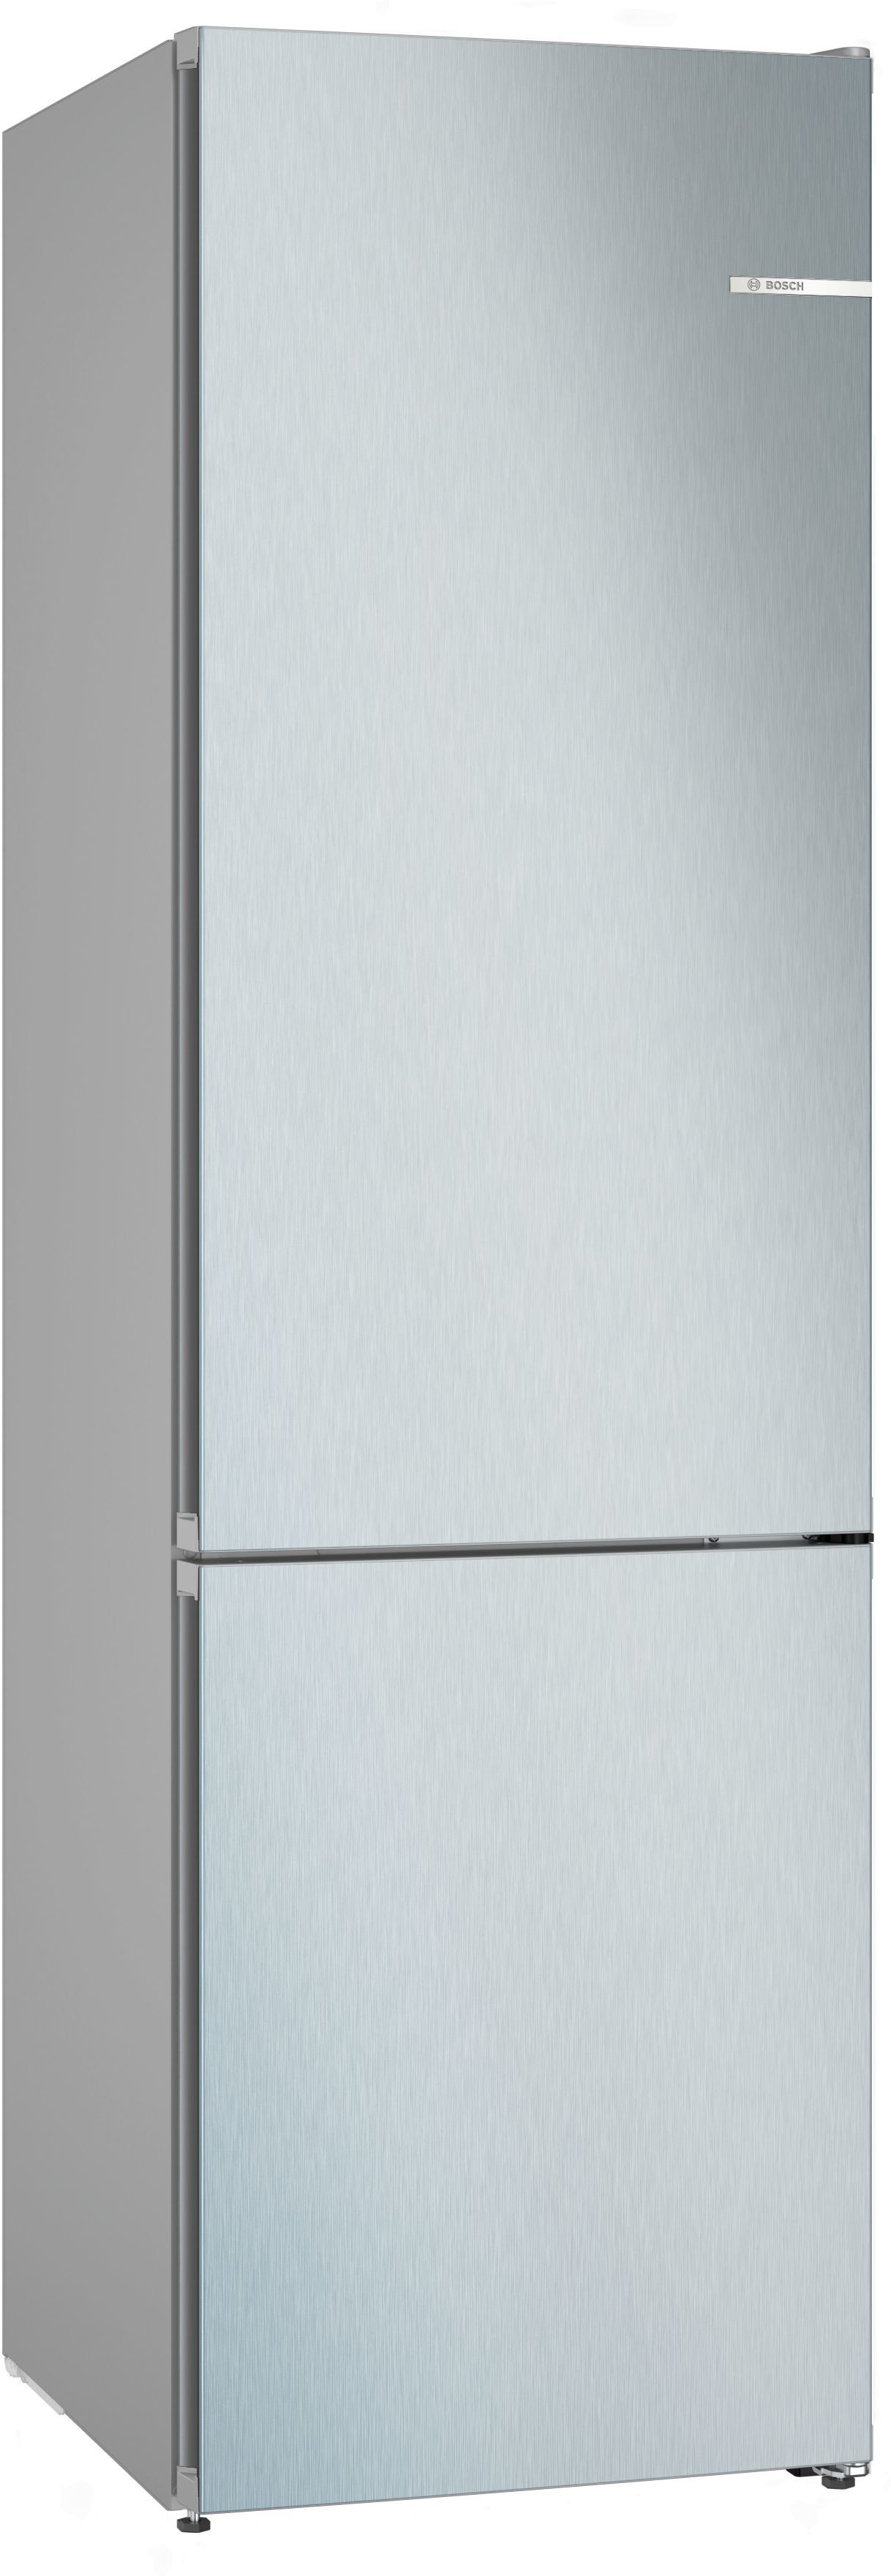 bsh elettrodomestici spa bosch serie 4 kgn392lcf frigorifero con congelatore libera installazione 363 l c acciaio inossidabile nero donna